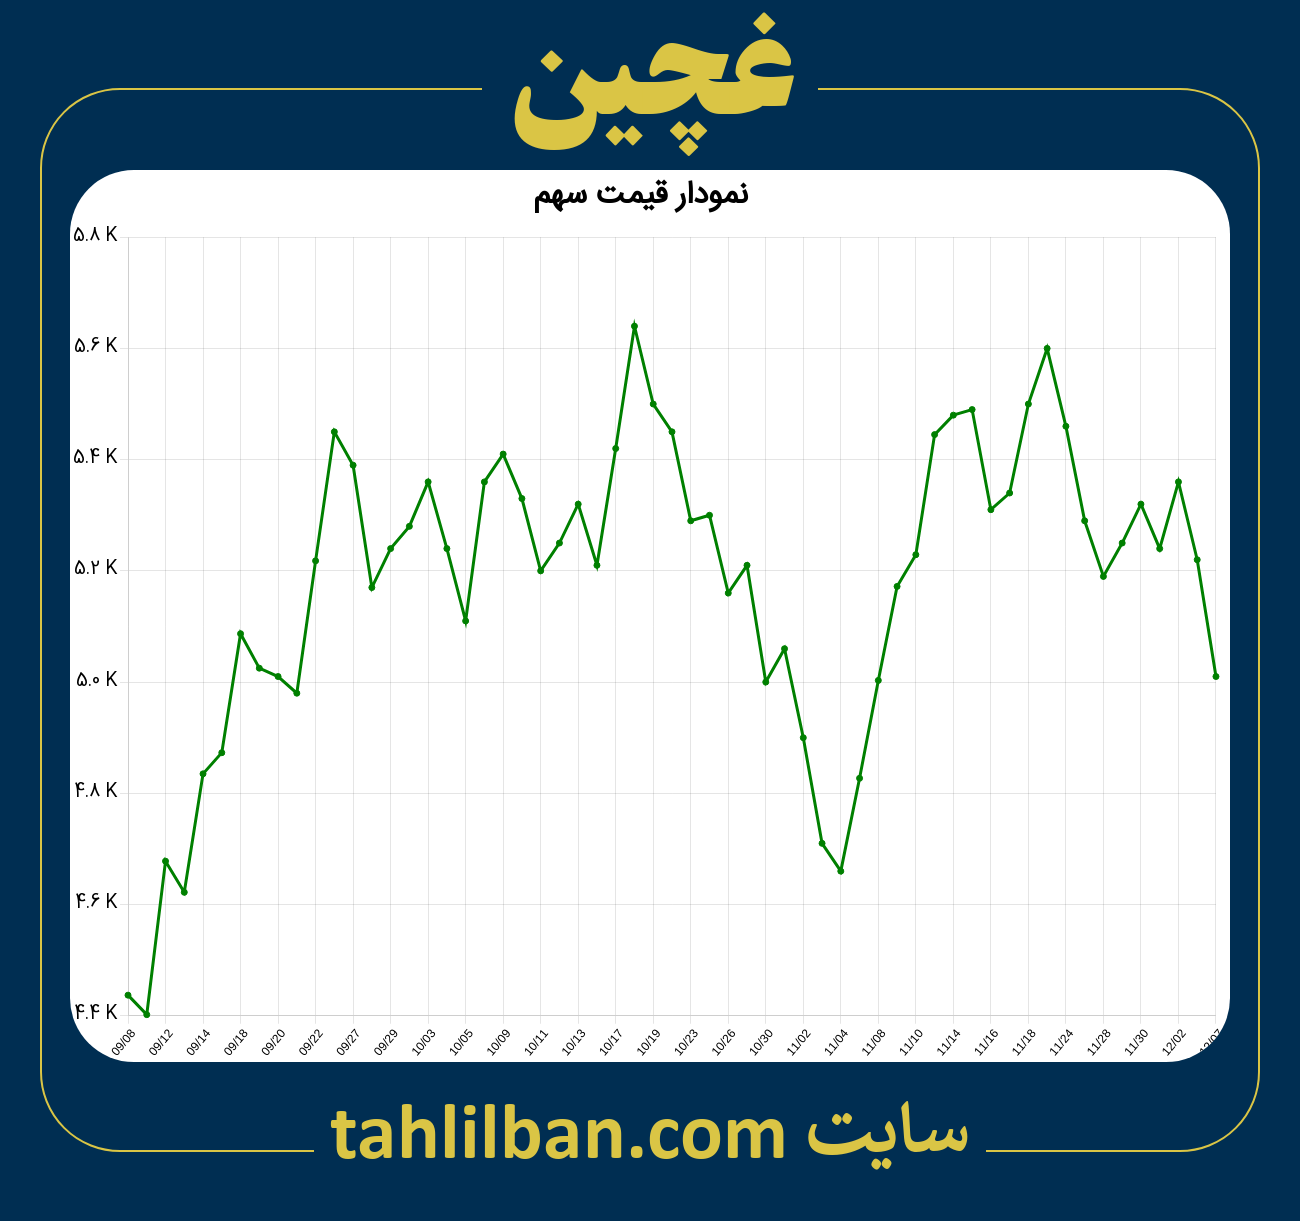 تصویر نمودار 3 ماهه قیمت سهم